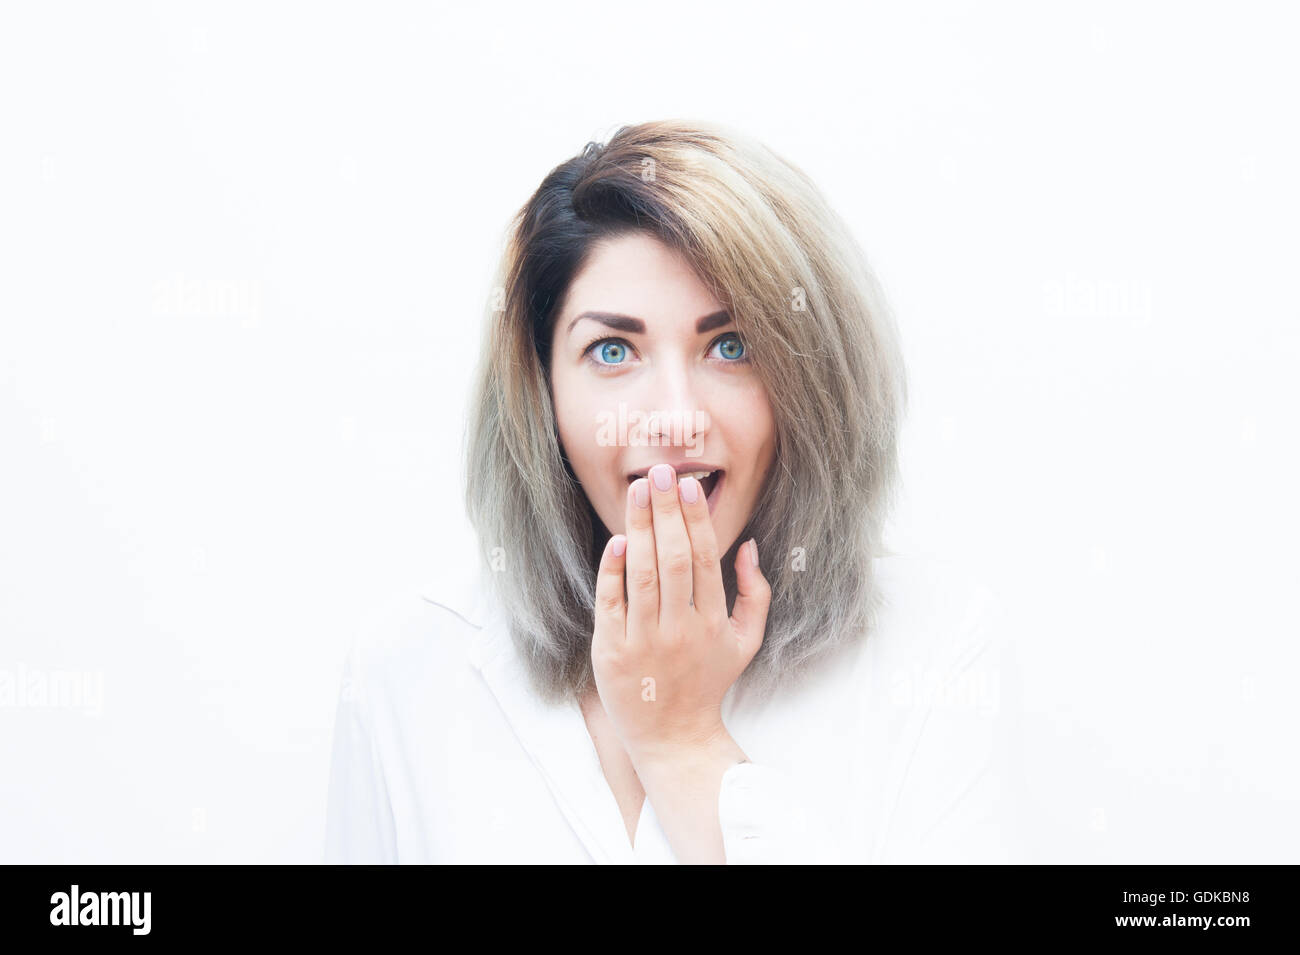 Junge blaue Augen blonde Frau erstaunt Ausdruck isoliert auf weiss portrait Stockfoto